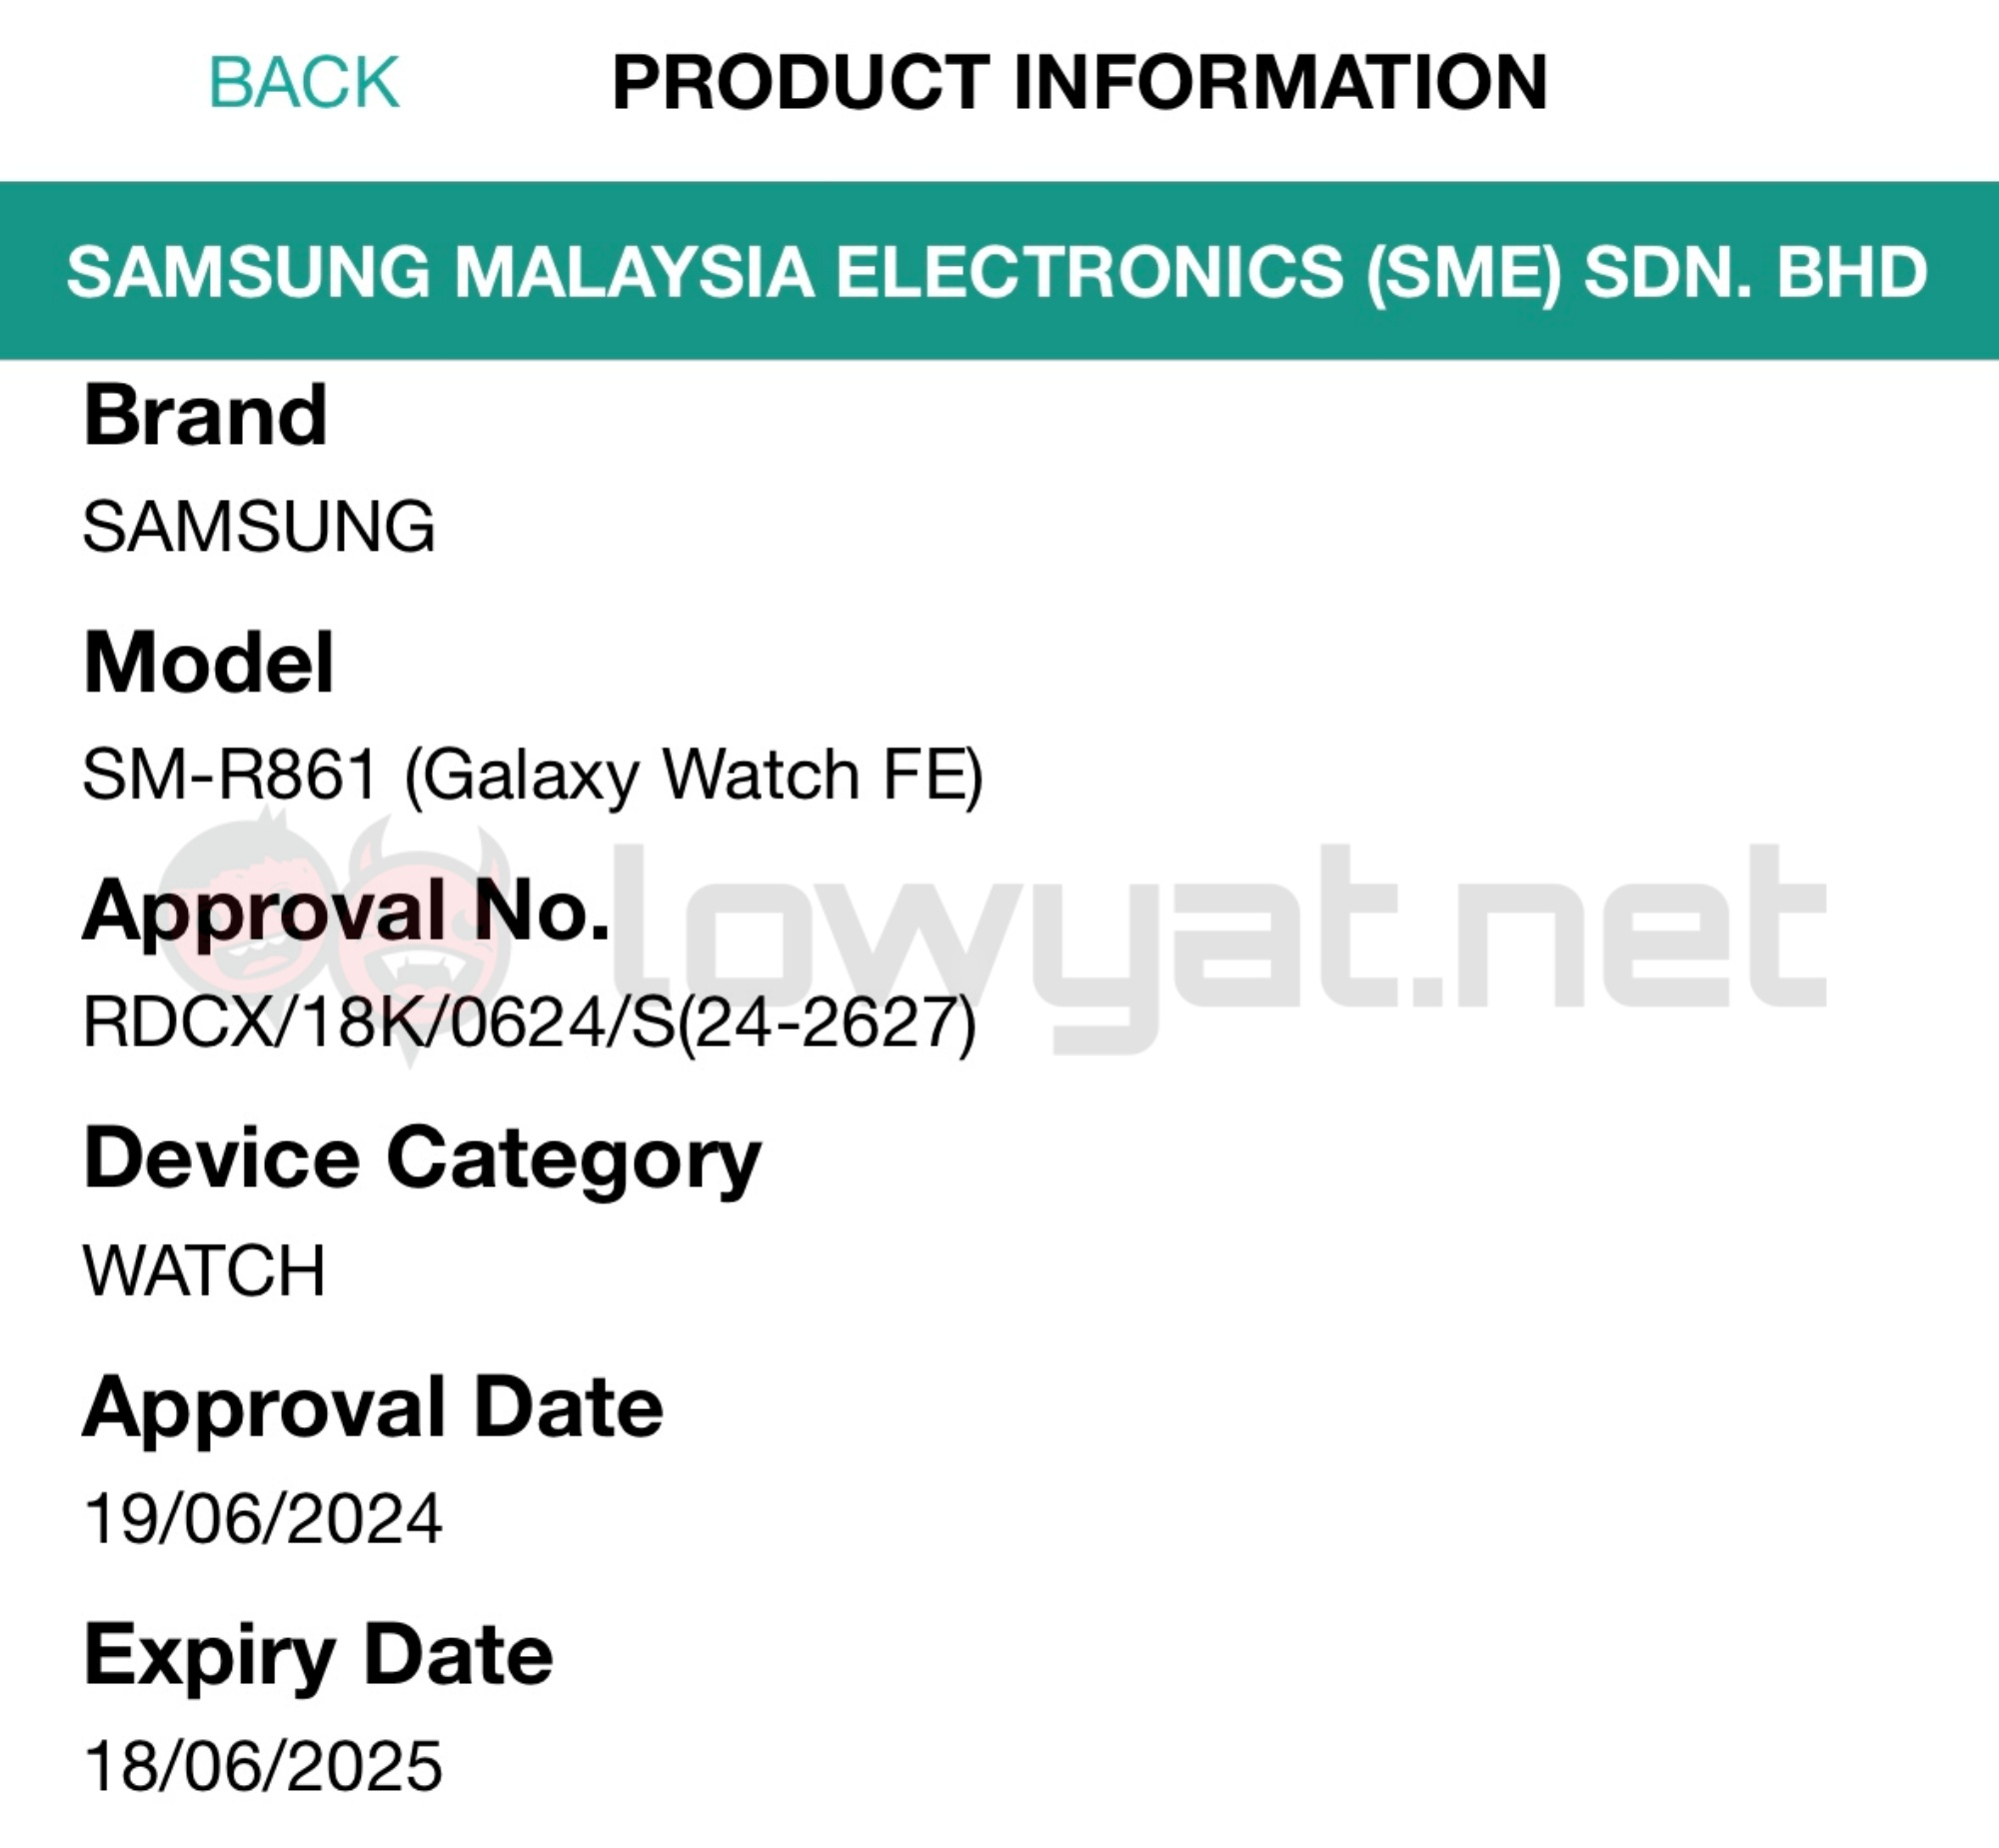 Samsung Galaxy Watch FE SIRIM listing